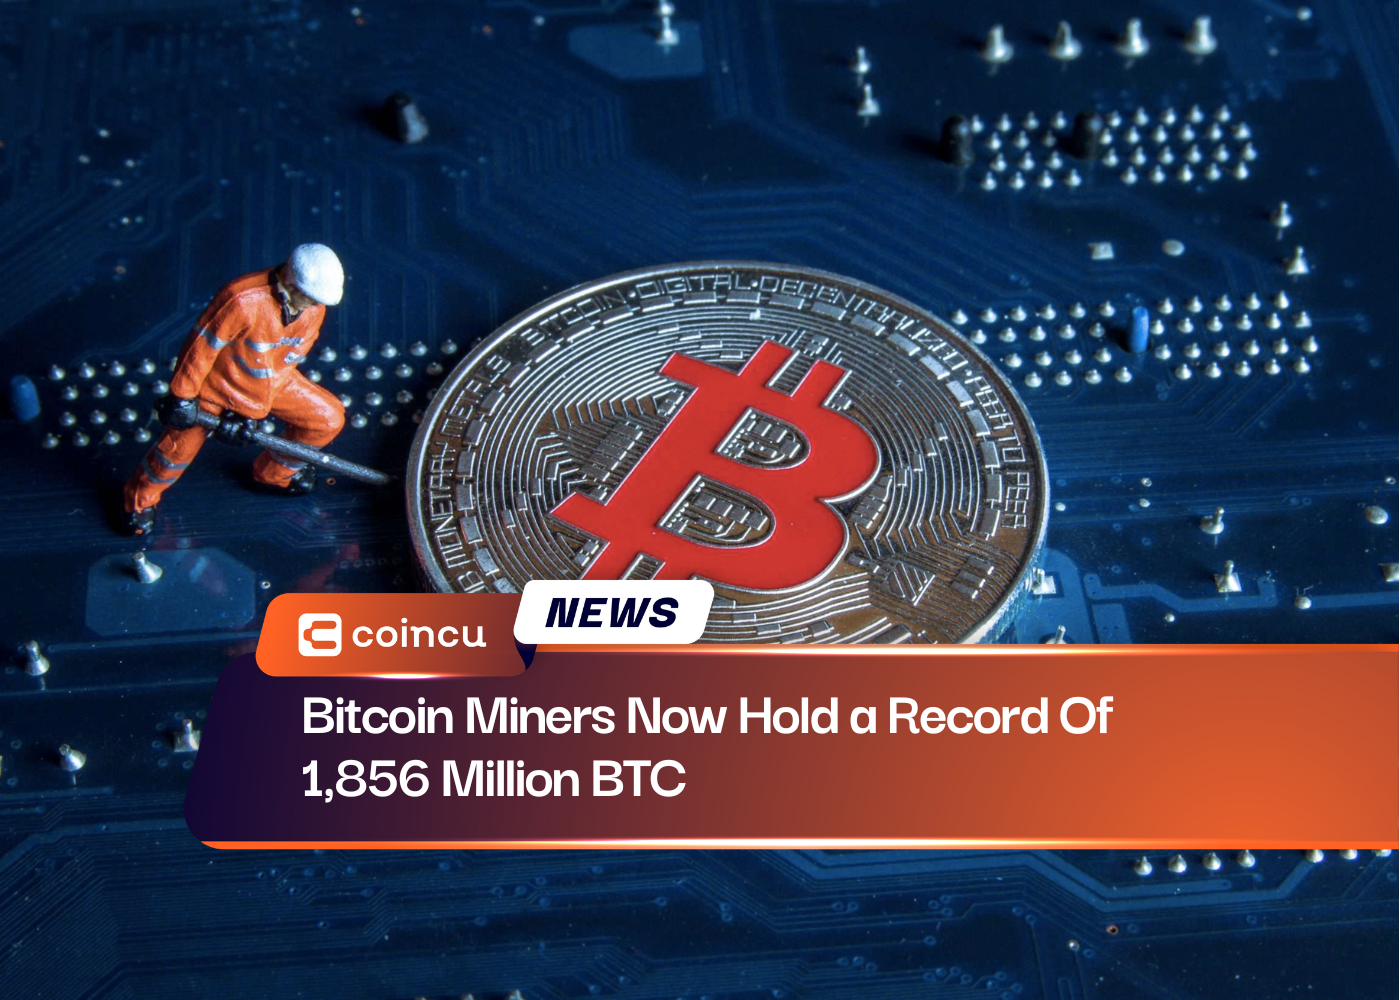 Los mineros de Bitcoin ahora tienen un récord de 1,856 millones de BTC